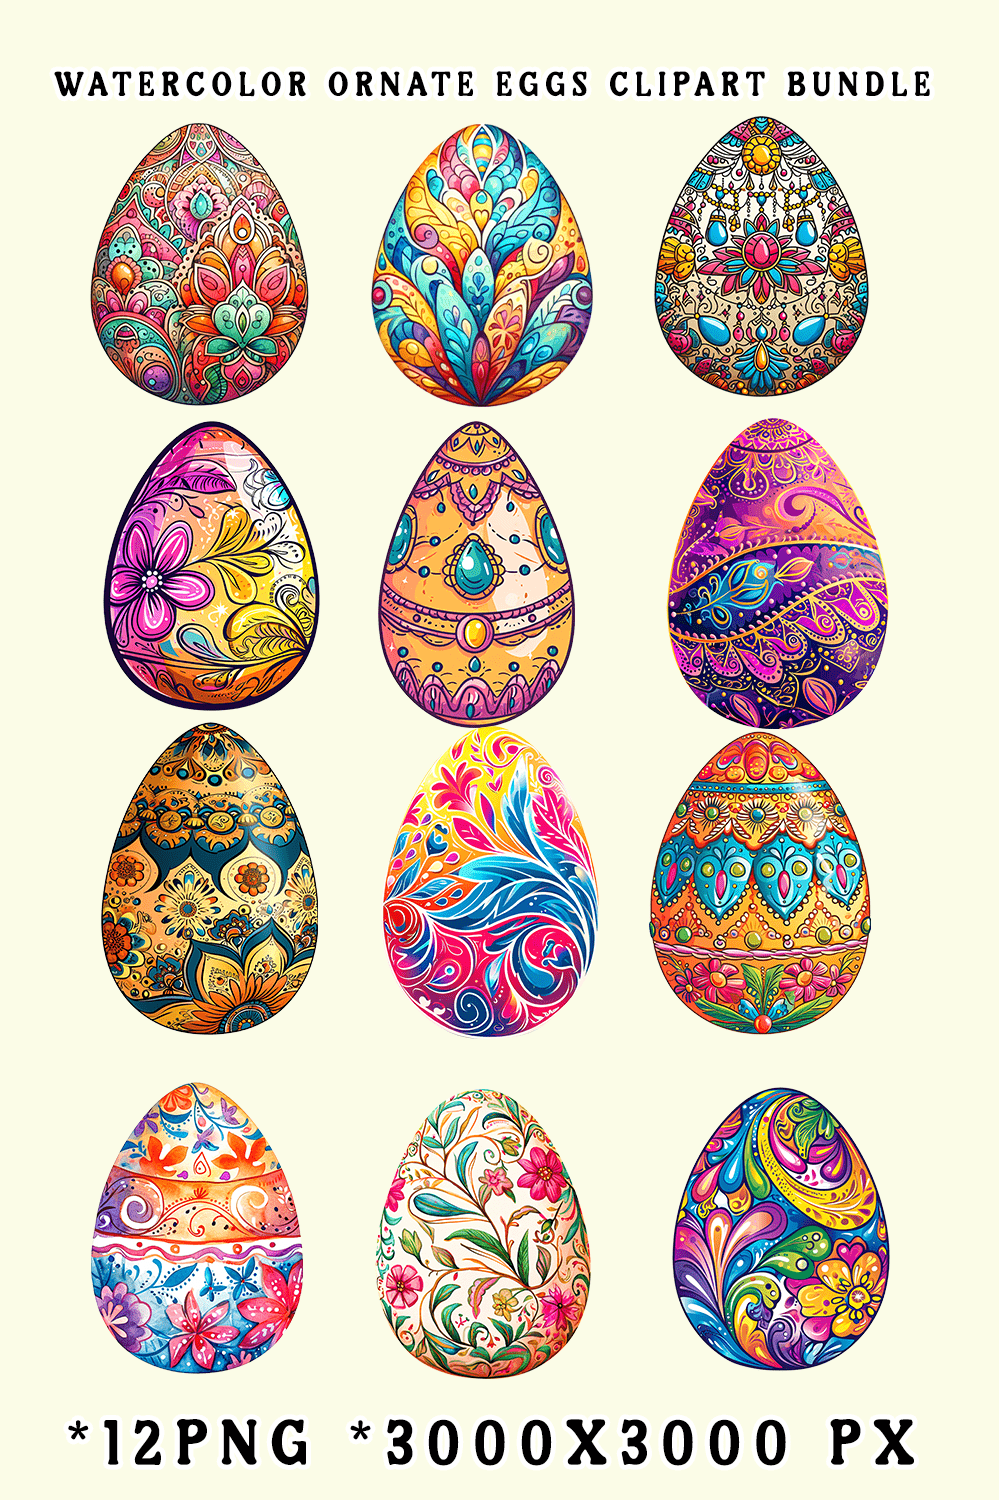 Watercolor Ornate Eggs Clipart Bundle pinterest preview image.